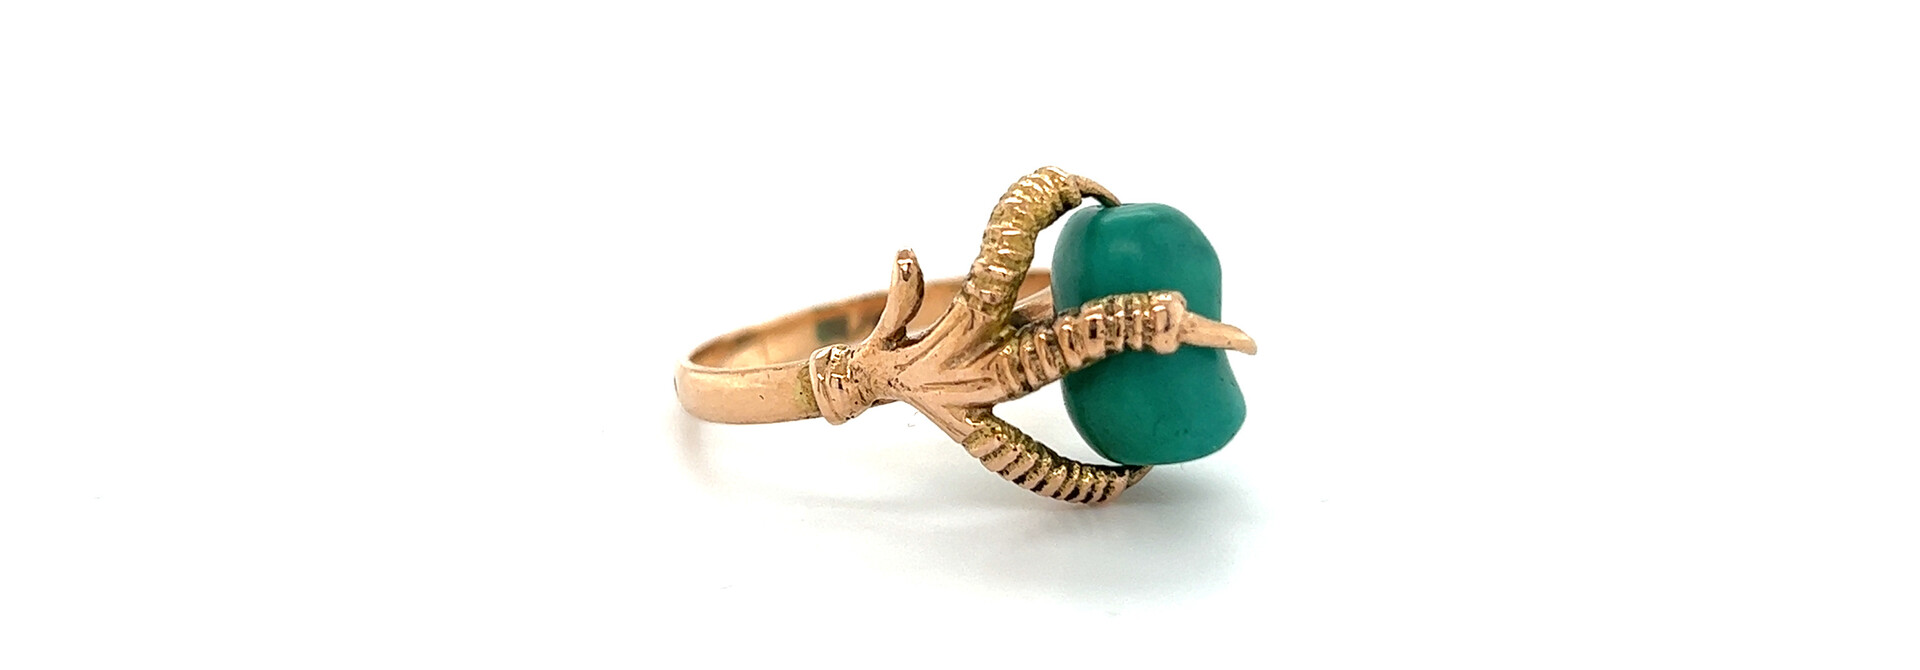 Artistieke vintage ring kippenpoot met groene steen